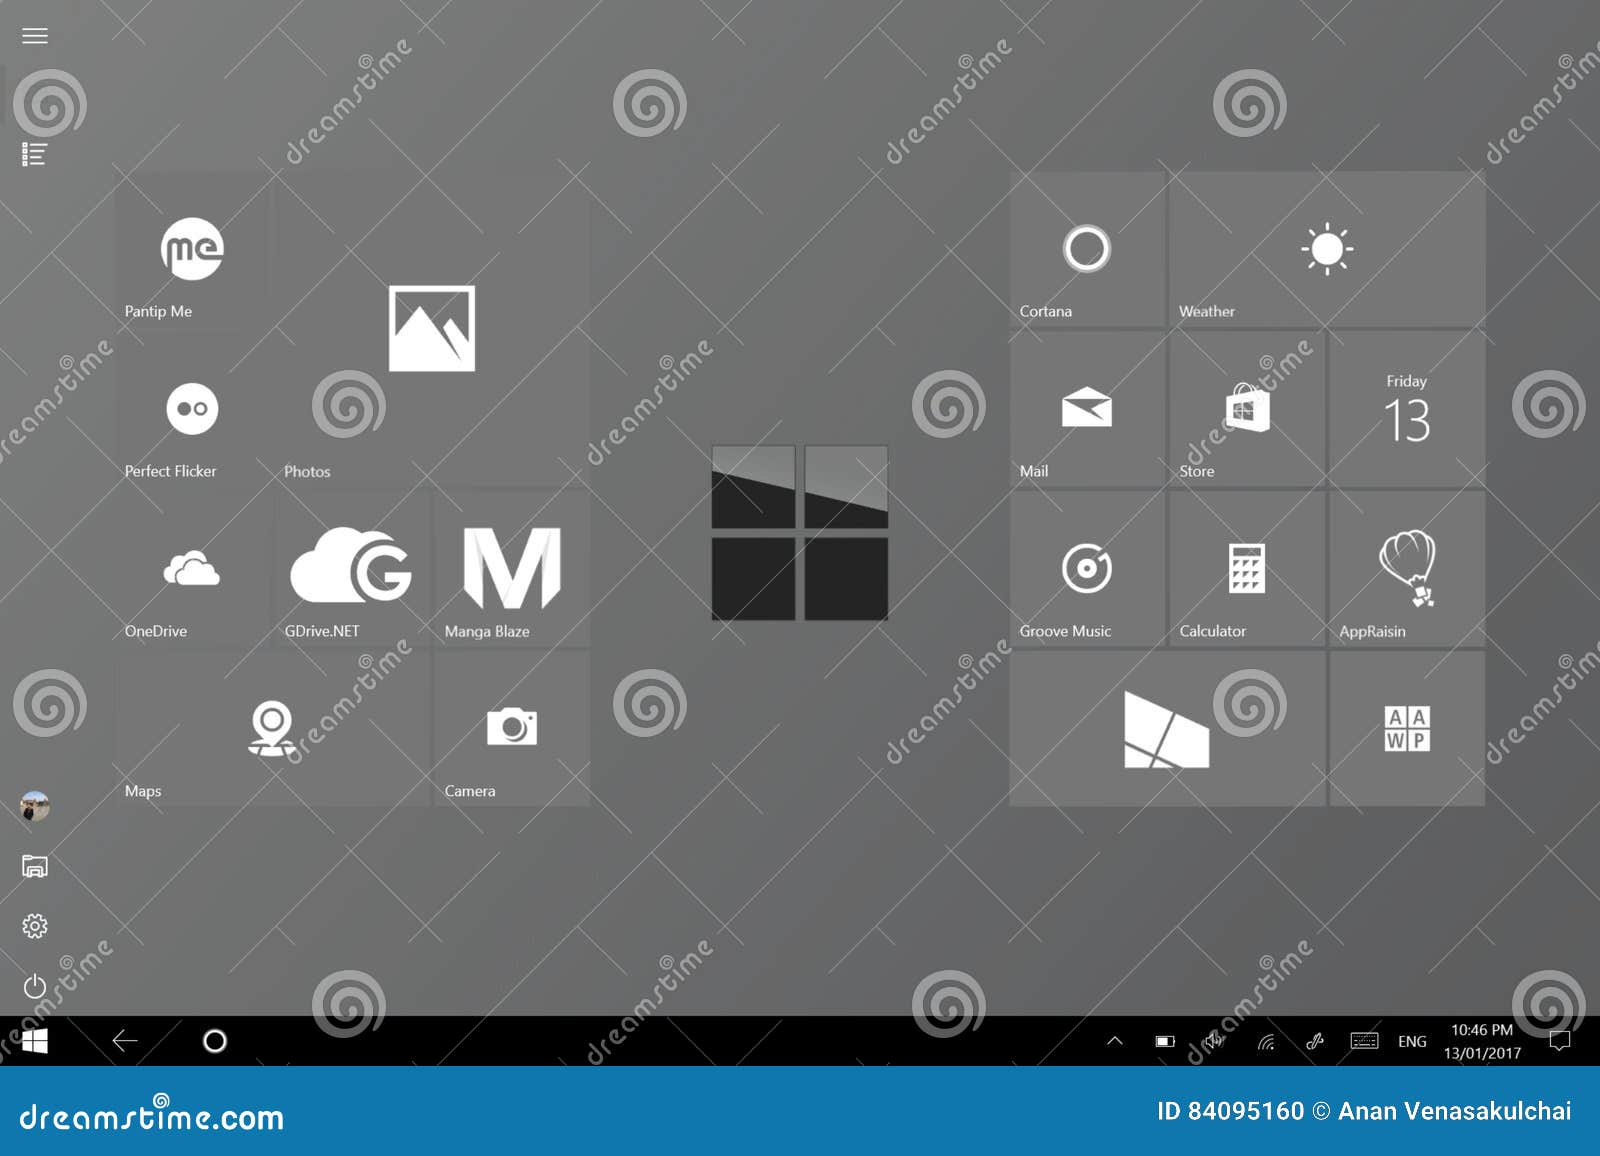 Màn hình bắt đầu chế độ máy tính bảng Windows 10 - Khám phá màn hình bắt đầu hoàn toàn mới trên Windows 10 như chưa bao giờ trước đây. Chế độ máy tính bảng giờ đây sẽ gợi cảm hứng và khơi gợi sự sáng tạo cho cuộc sống của bạn. Hãy cùng khám phá những tính năng độc đáo của Windows 10 ngay hôm nay để có một trải nghiệm thú vị!